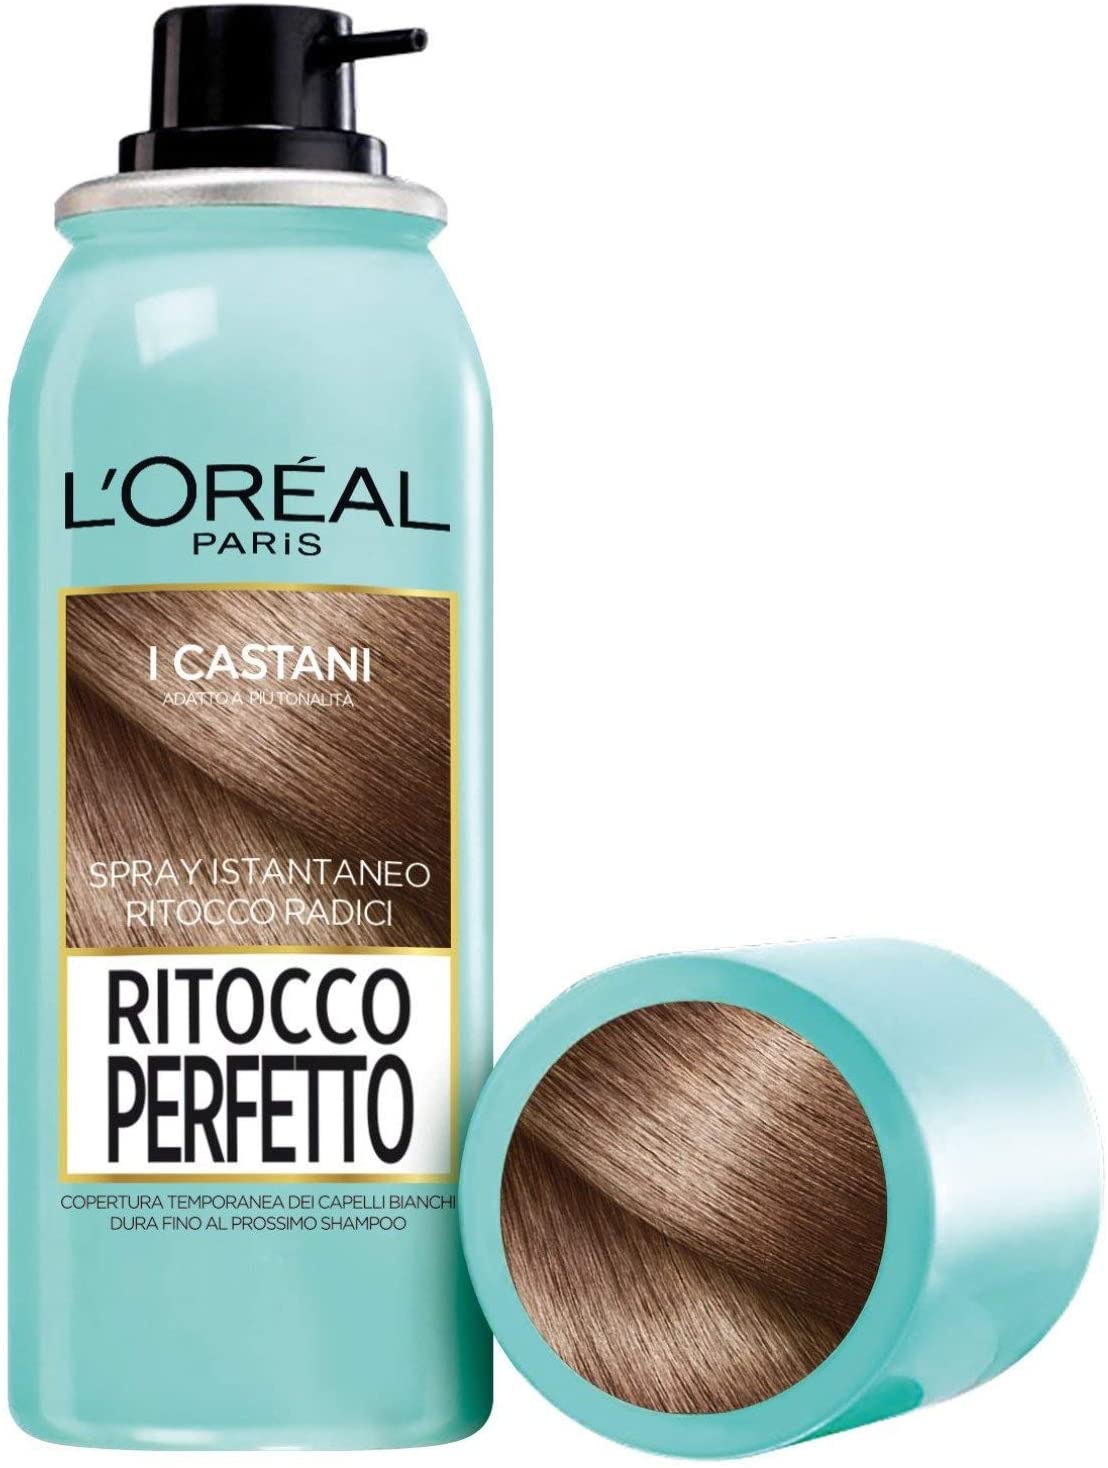 L'Oréal Paris Ritocco Perfetto Spray Ritocco Radici, Colorazione Ricrescita, Copre i Capelli Bianchi e Dura 1 Shampoo, 3 Castano, 75 ml